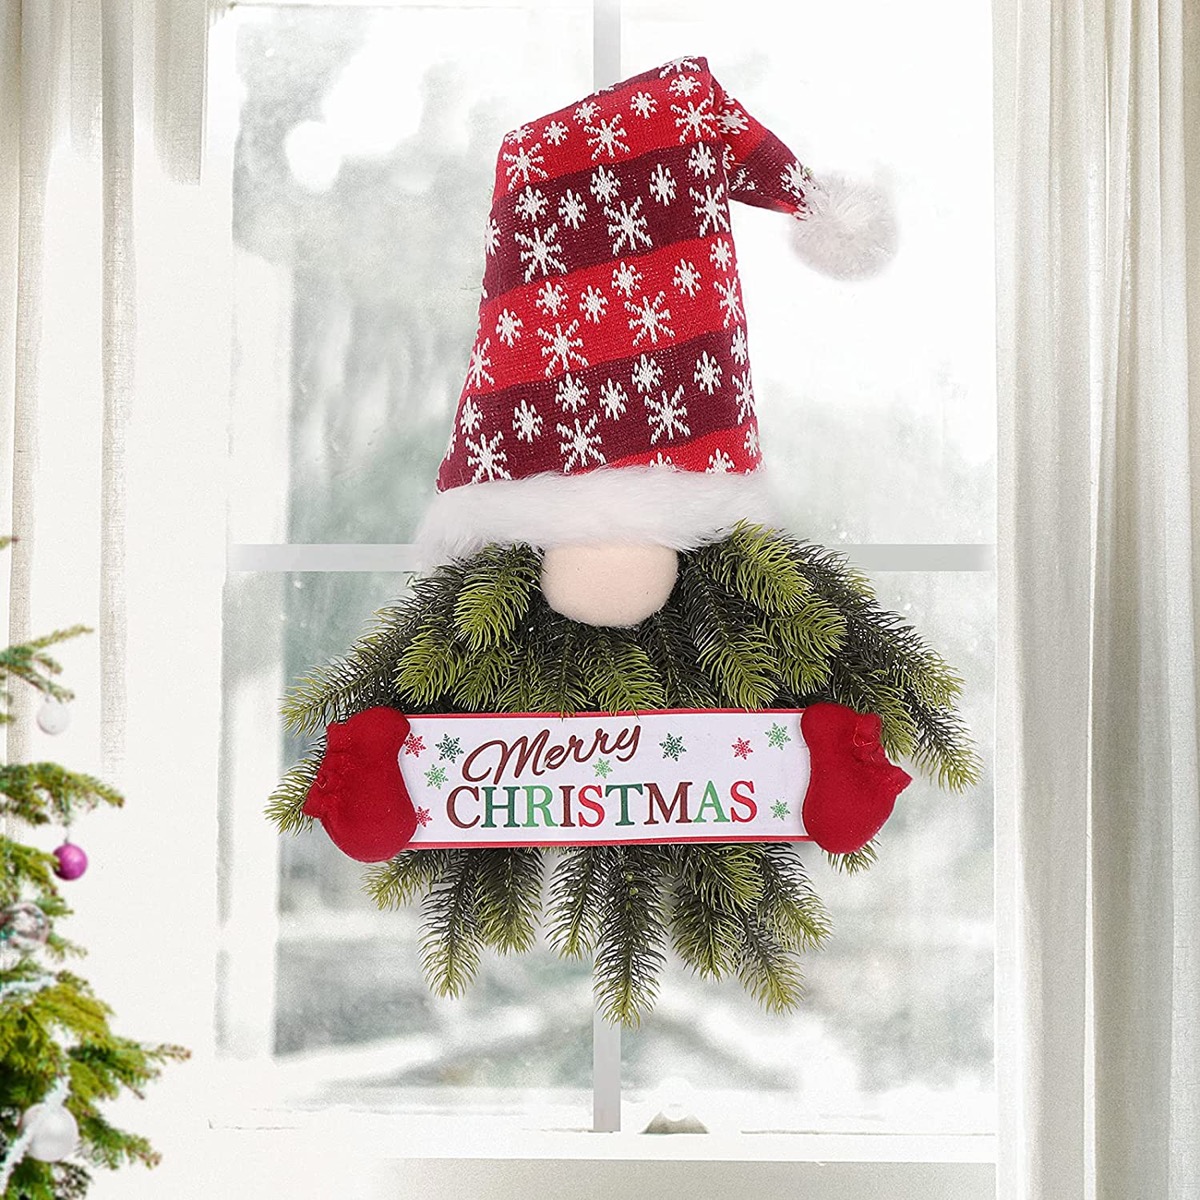 Thiết kế national lampoon's christmas decor Gợi ý cho trang trí Giáng sinh của bạn